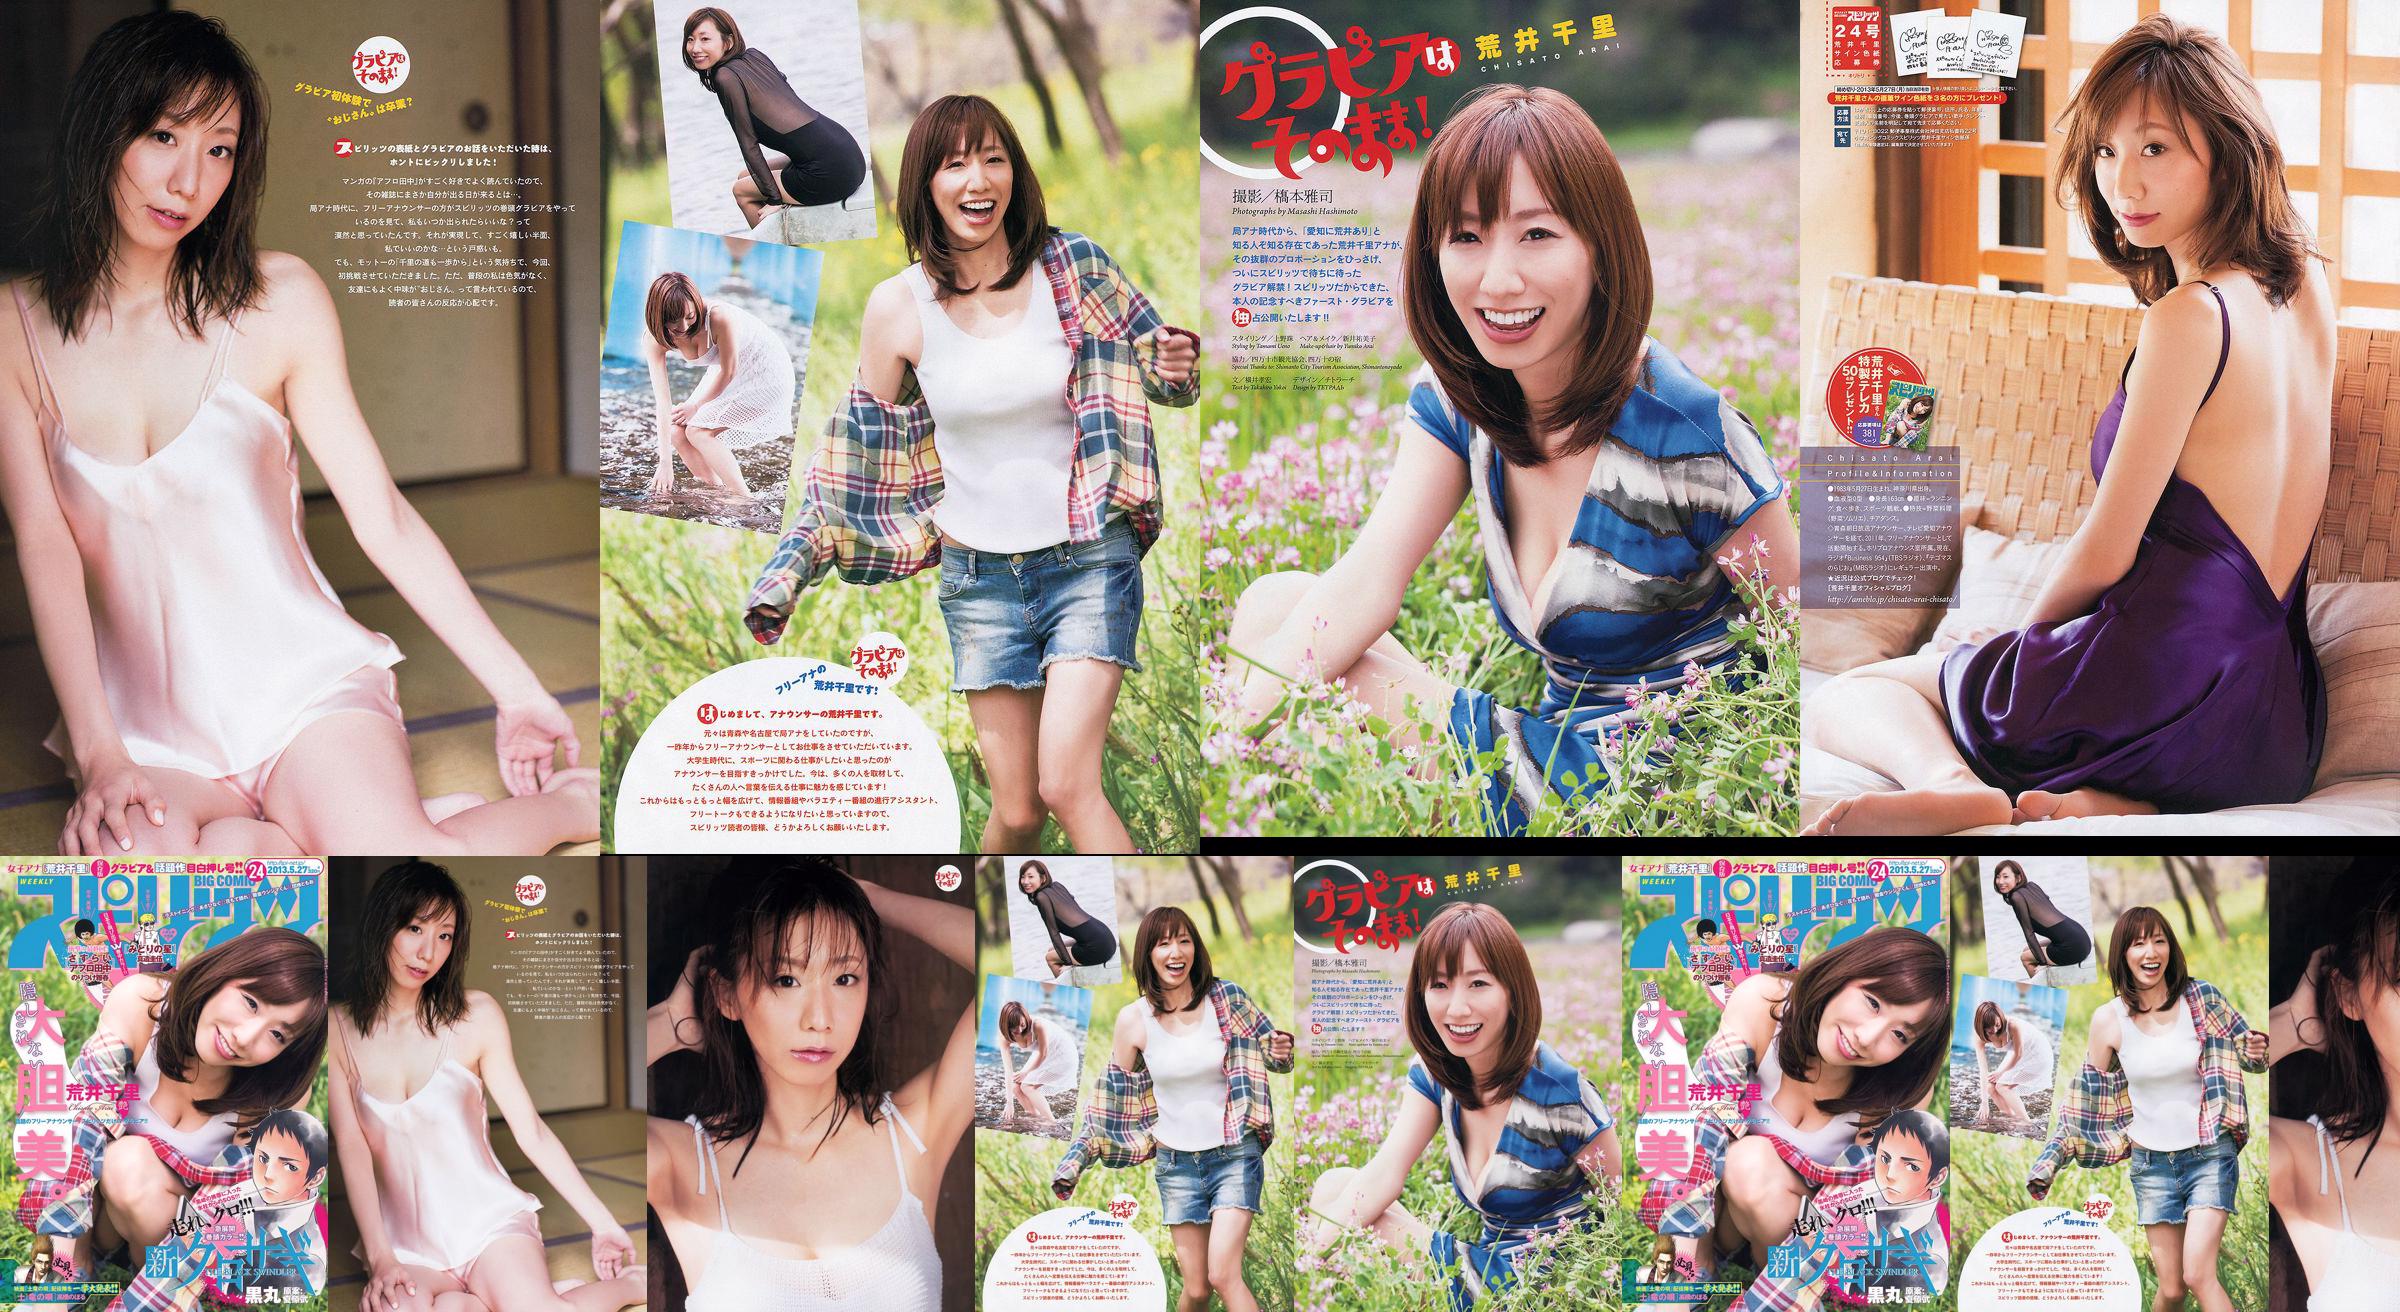 [Semangat Komik Besar Mingguan] Chisato Arai 2013 Majalah Foto No.24 No.66fd93 Halaman 1